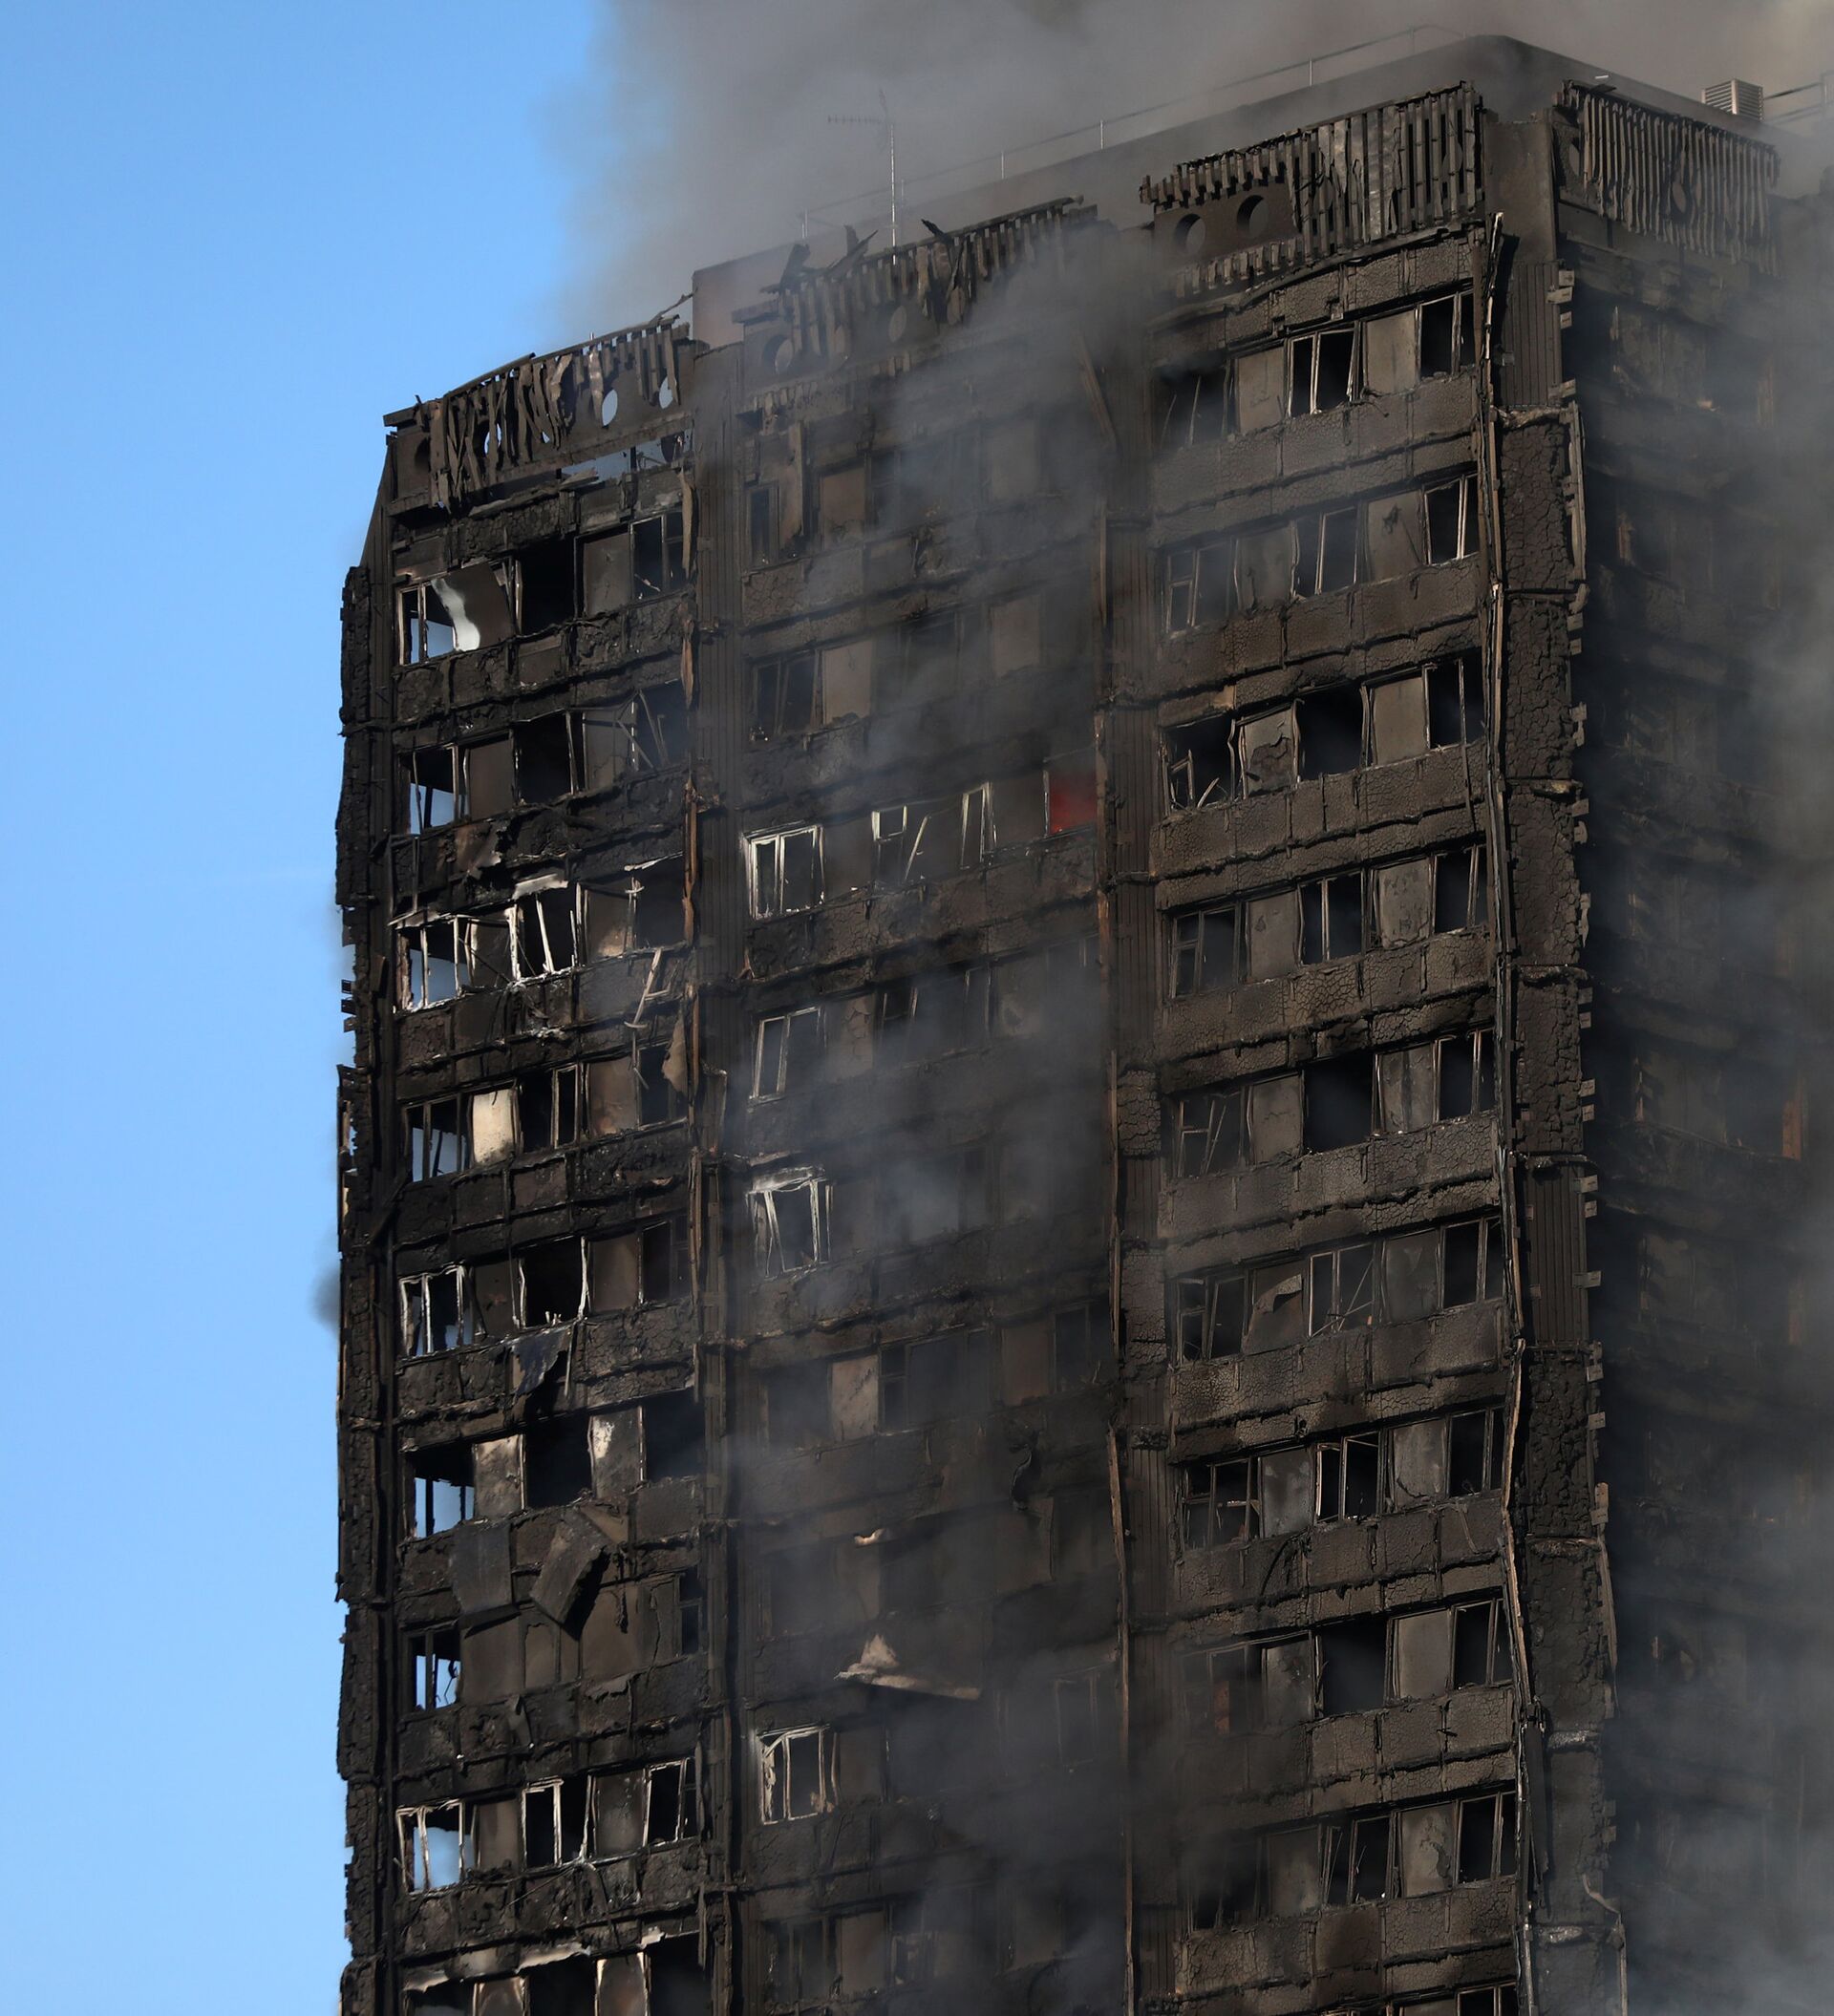 Сгорела многоэтажка. Гренфелл Тауэр пожар. Пожар в здании Grenfell Tower в Лондоне. Пожар в Лондоне 14 июня 2017. Горящий многоэтажный дом.